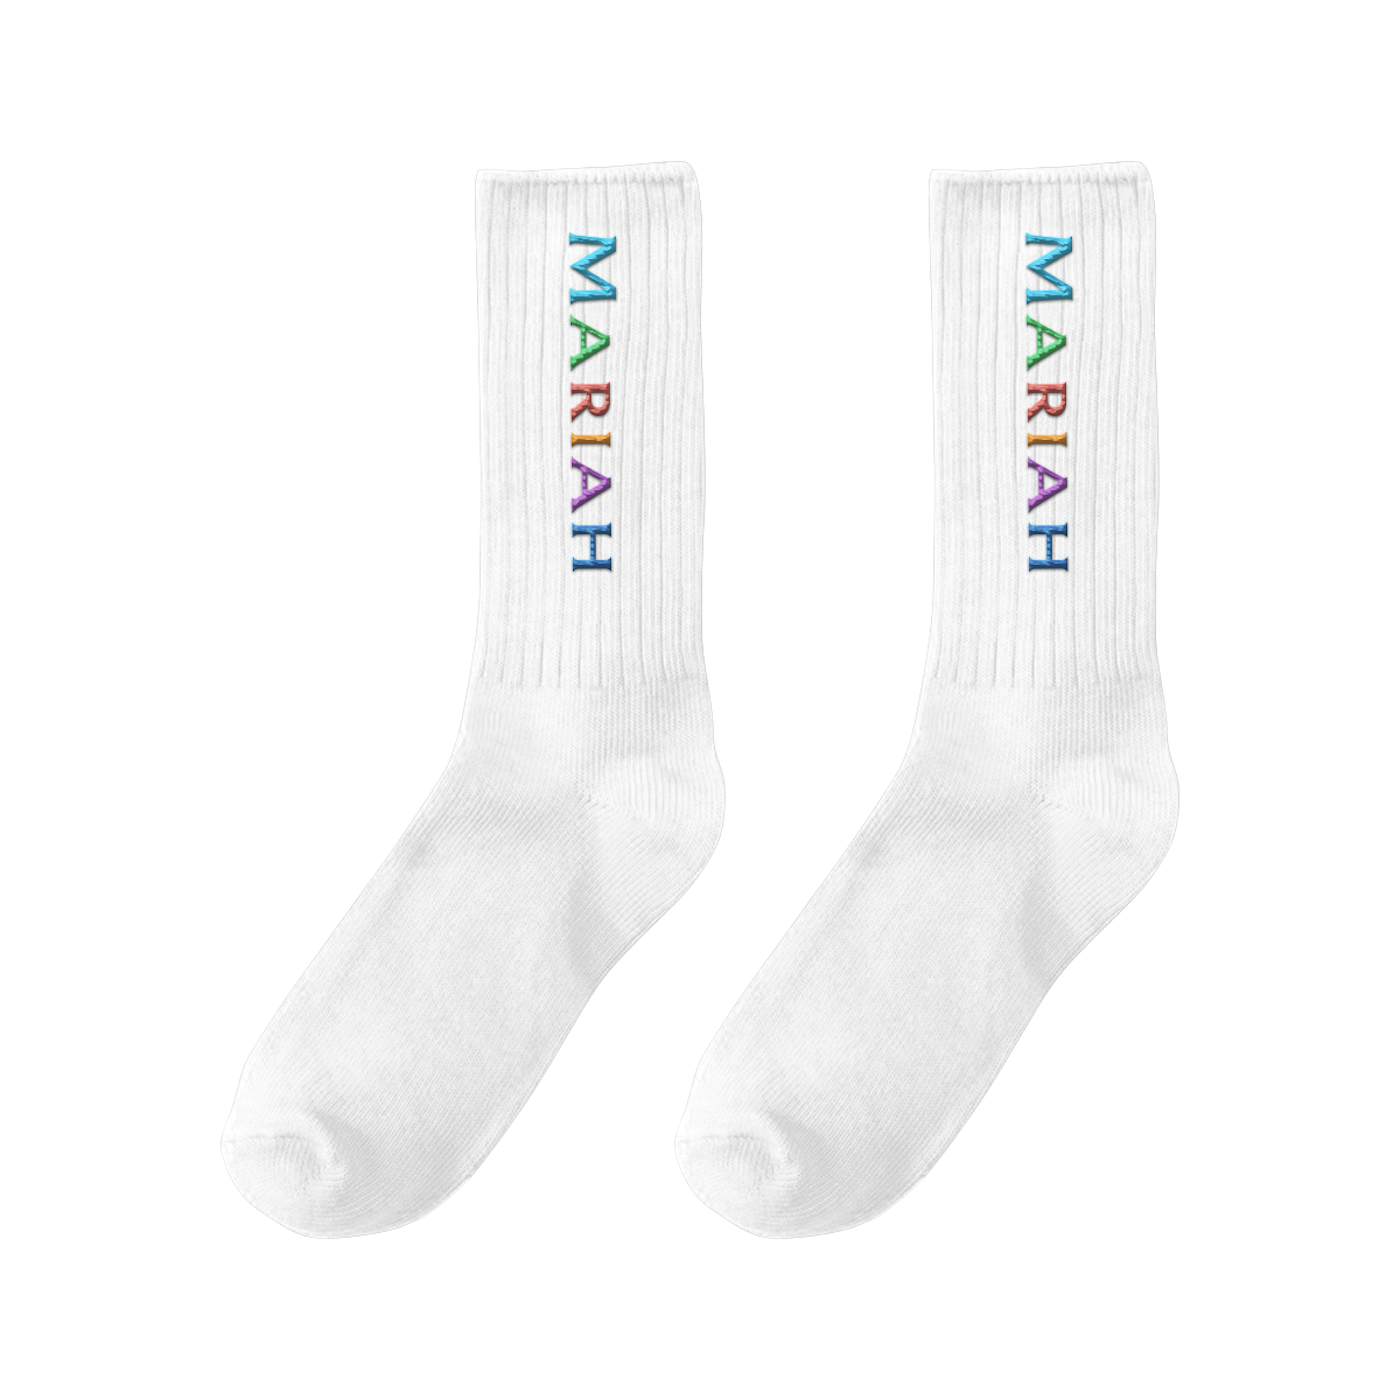 Mariah Carey Mariah Pride Socks